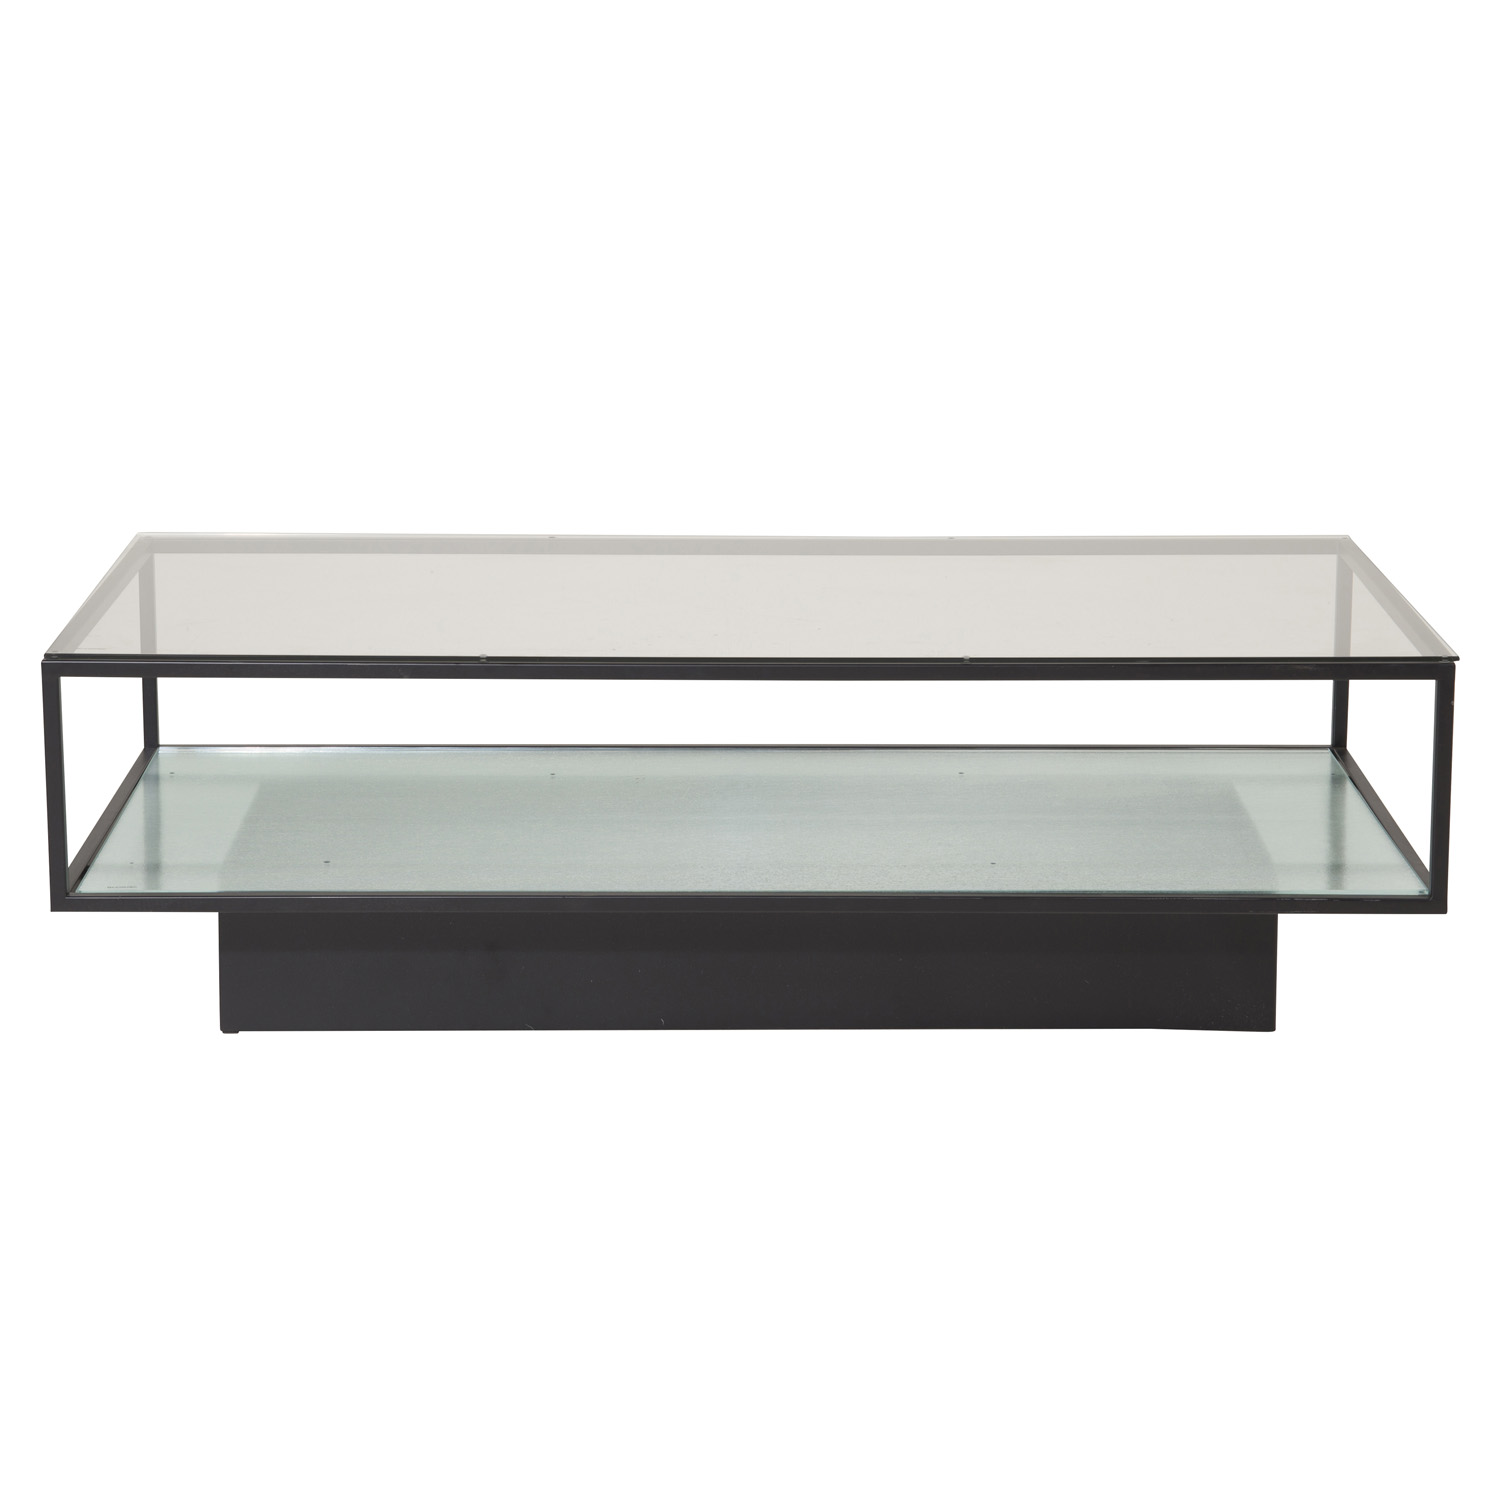 VENTURE DESIGN Maglehem sofabord, m. hylde - klar glas og sort metal (130x60)